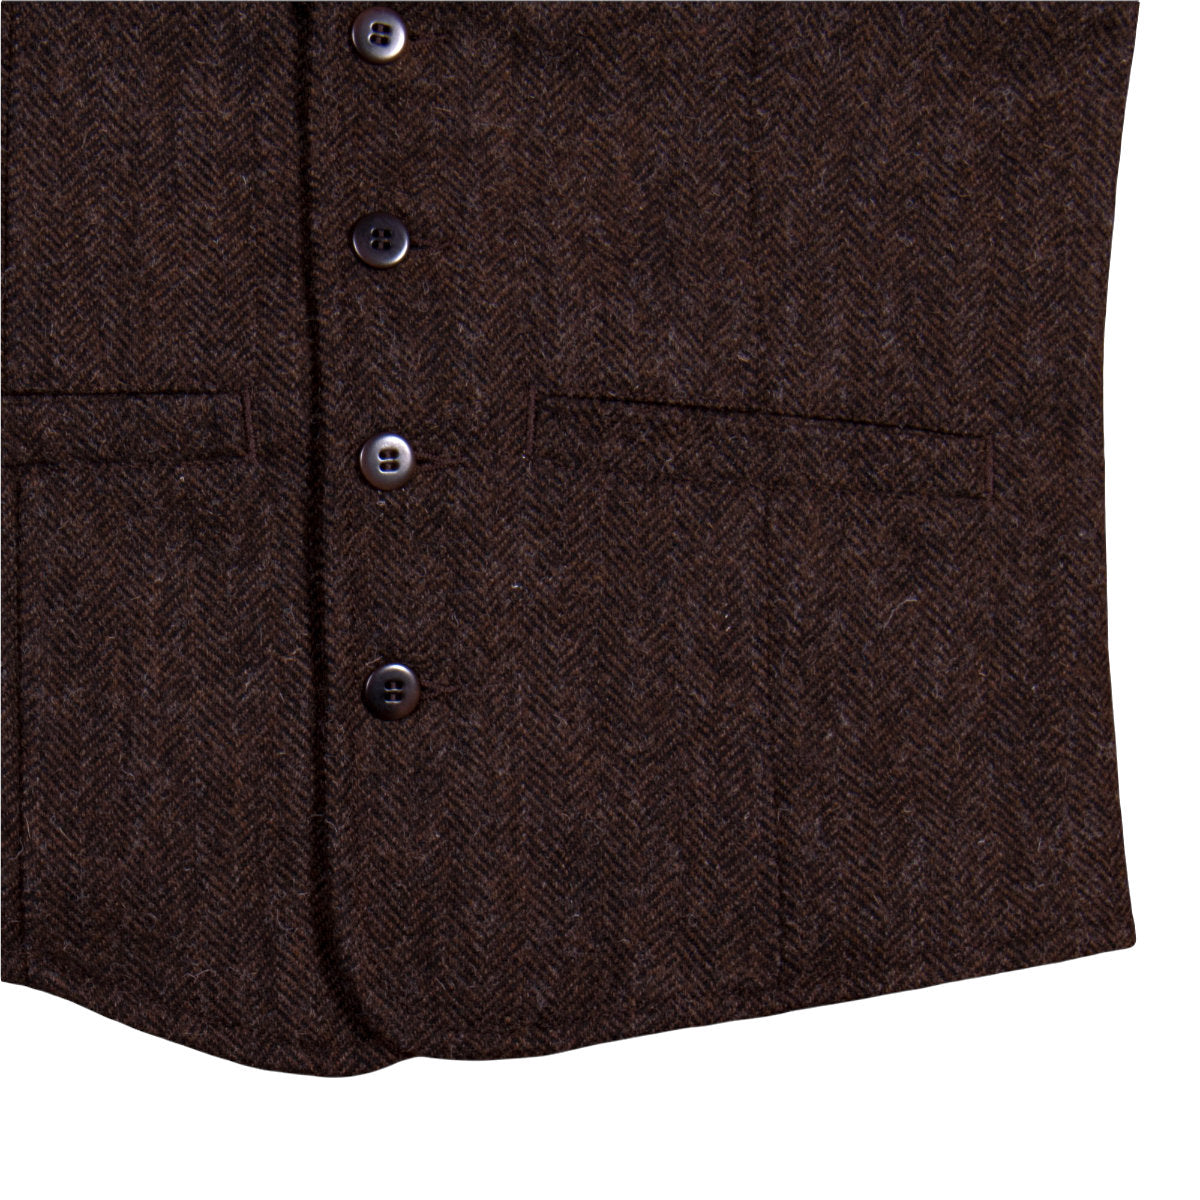 1905 hauler vest wool brown detail